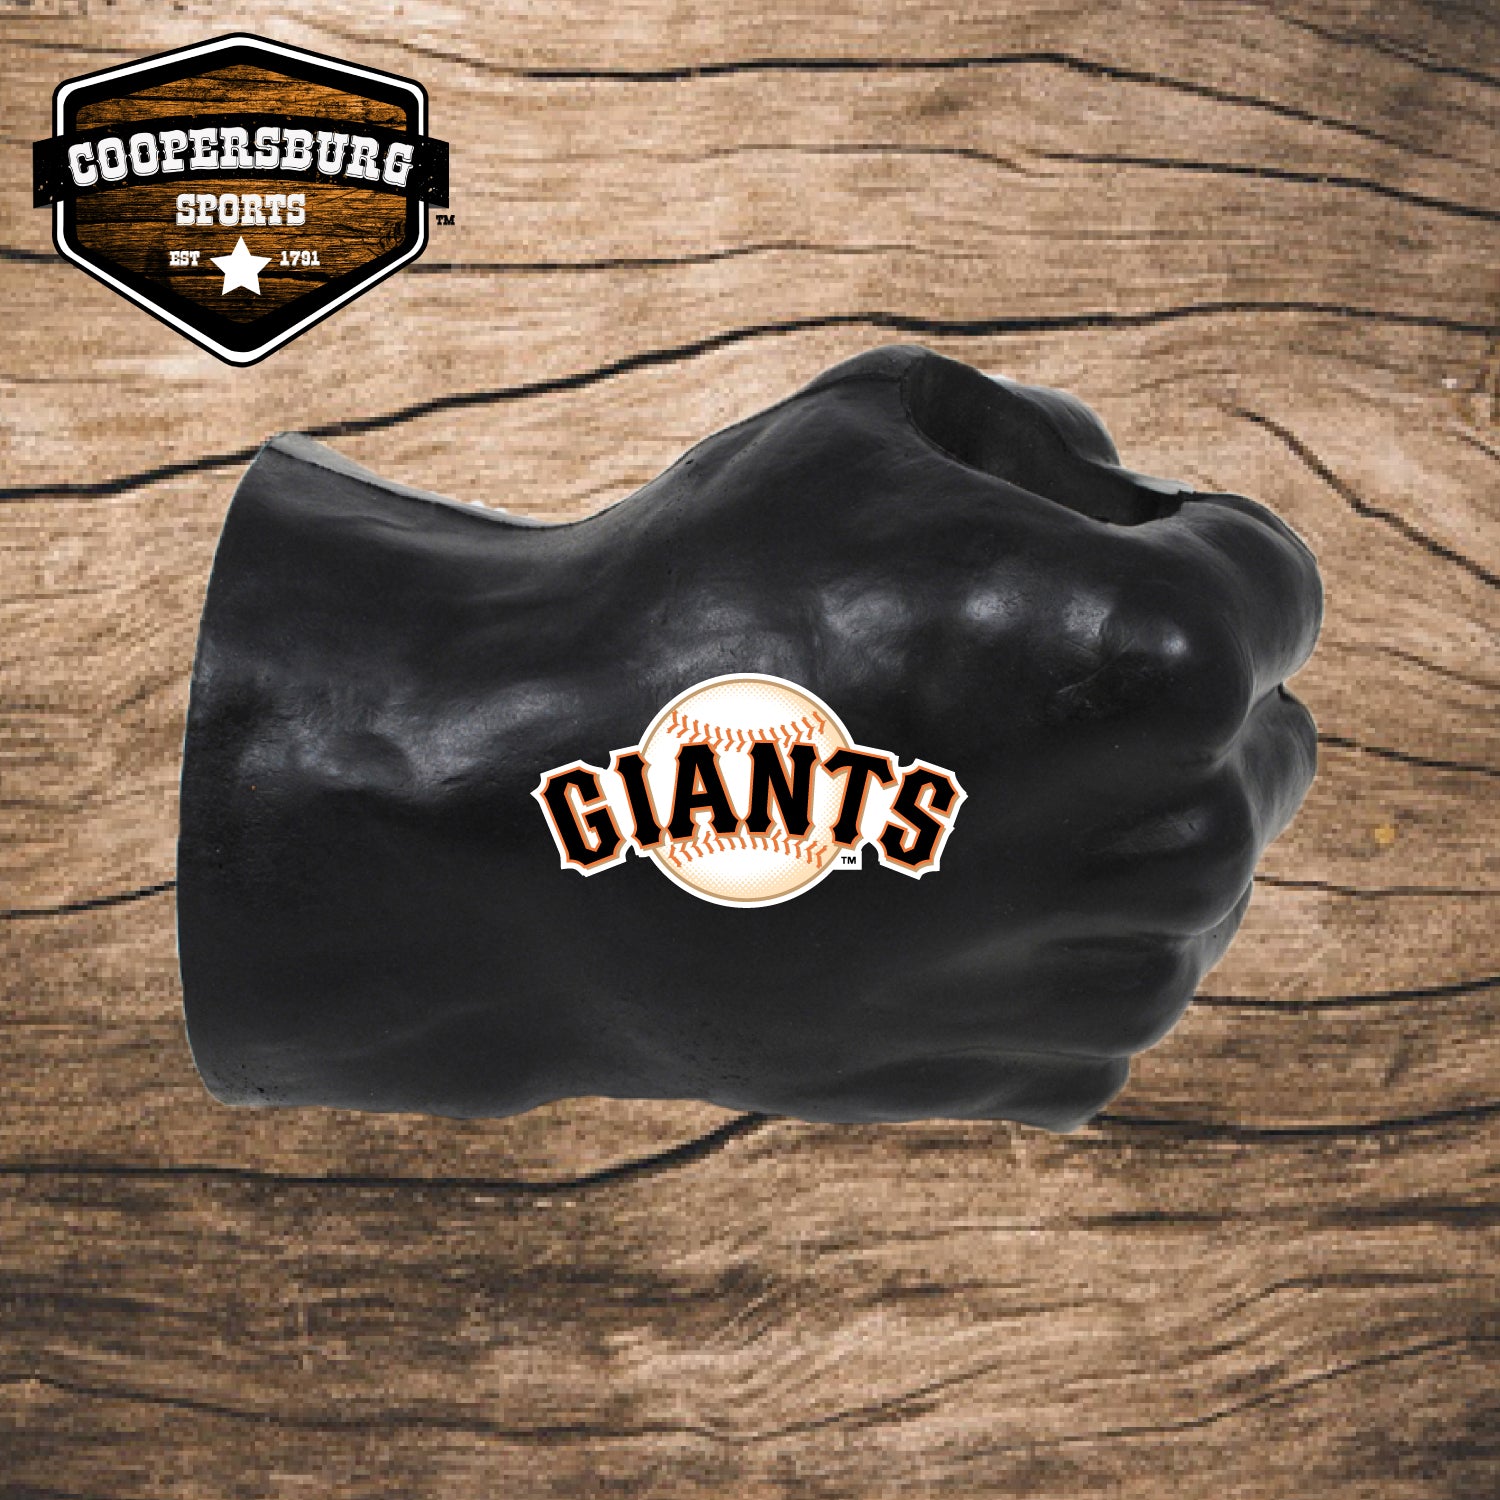 San Francisco Giants FAN FIST® Beverage Holder – Coopersburg